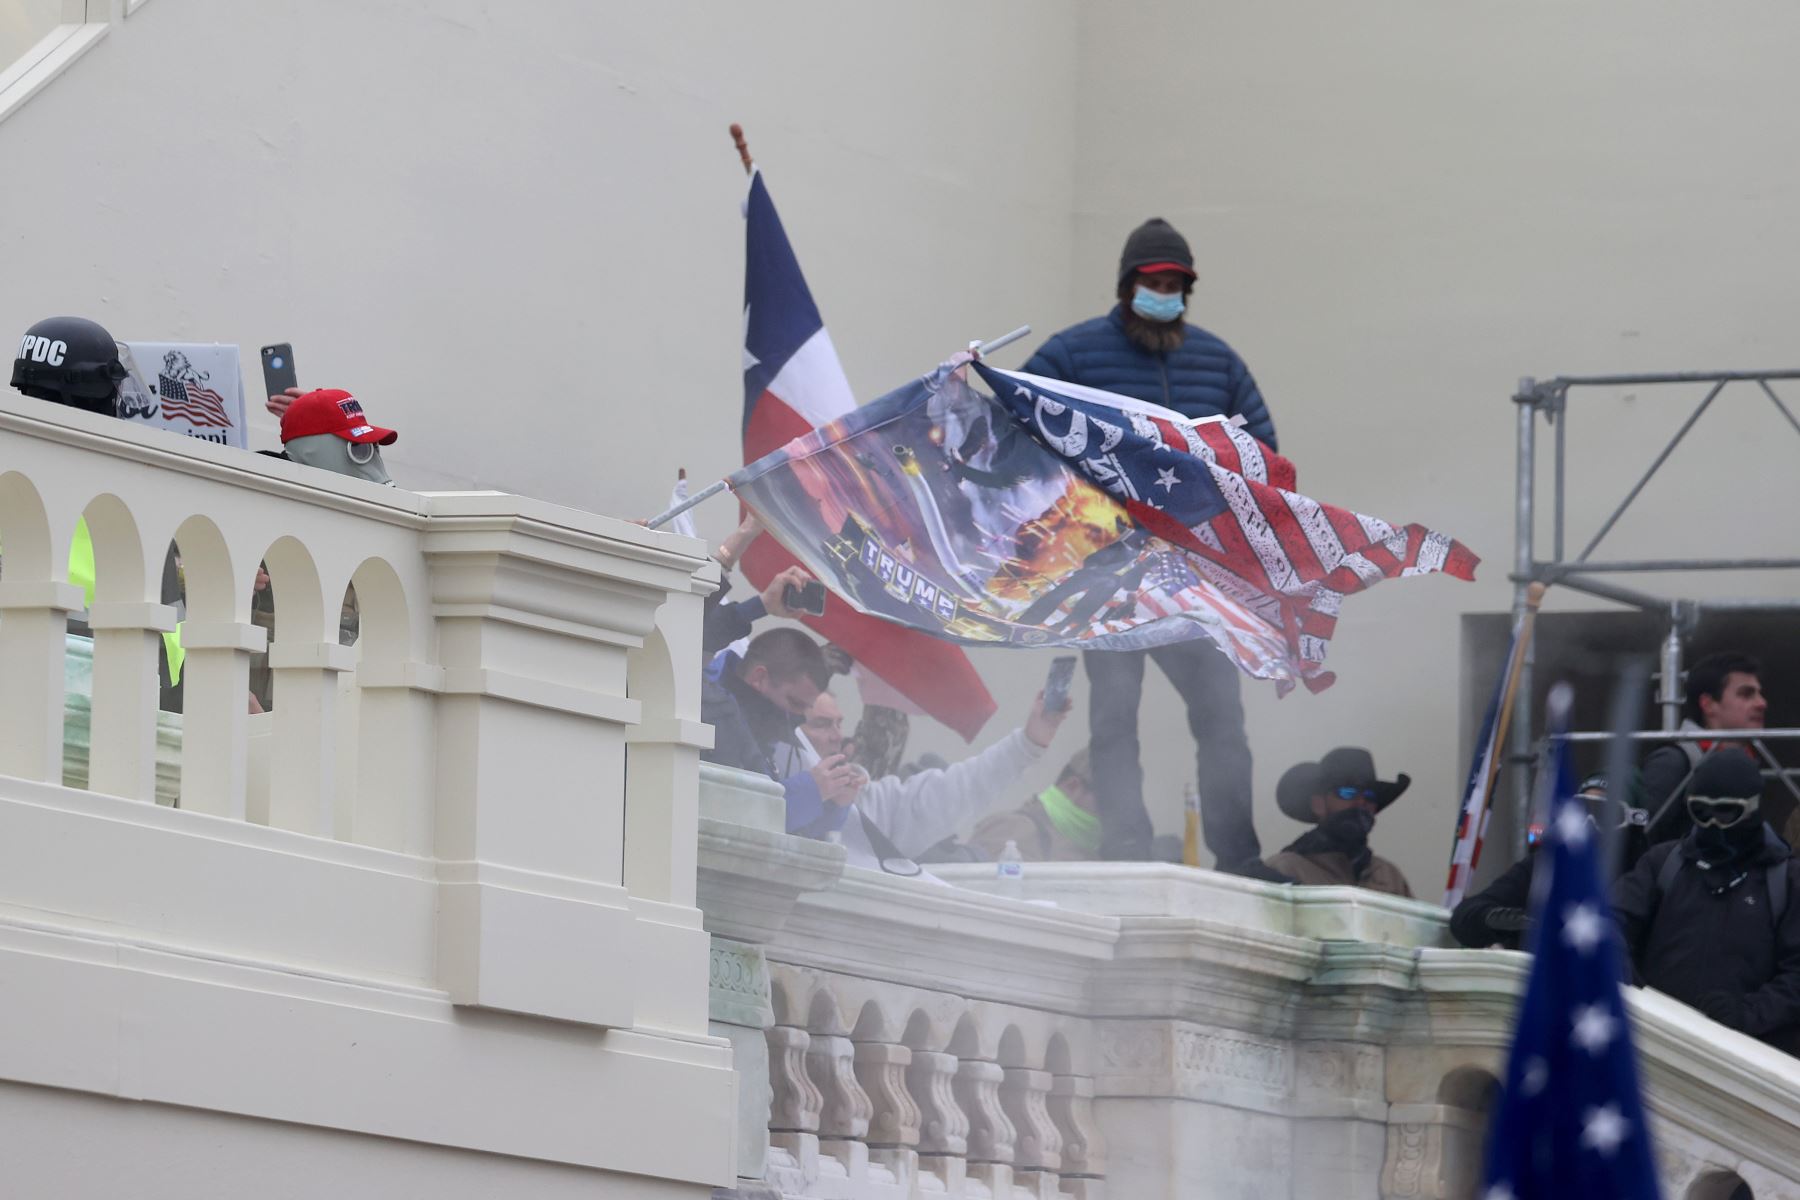 Los manifestantes pro-Trump ingresaron al edificio del Capitolio de los Estados Unidos después de manifestaciones masivas en la capital de la nación durante una sesión conjunta del Congreso para ratificar la victoria  del presidente electo Joe Biden.
Foto: AFP